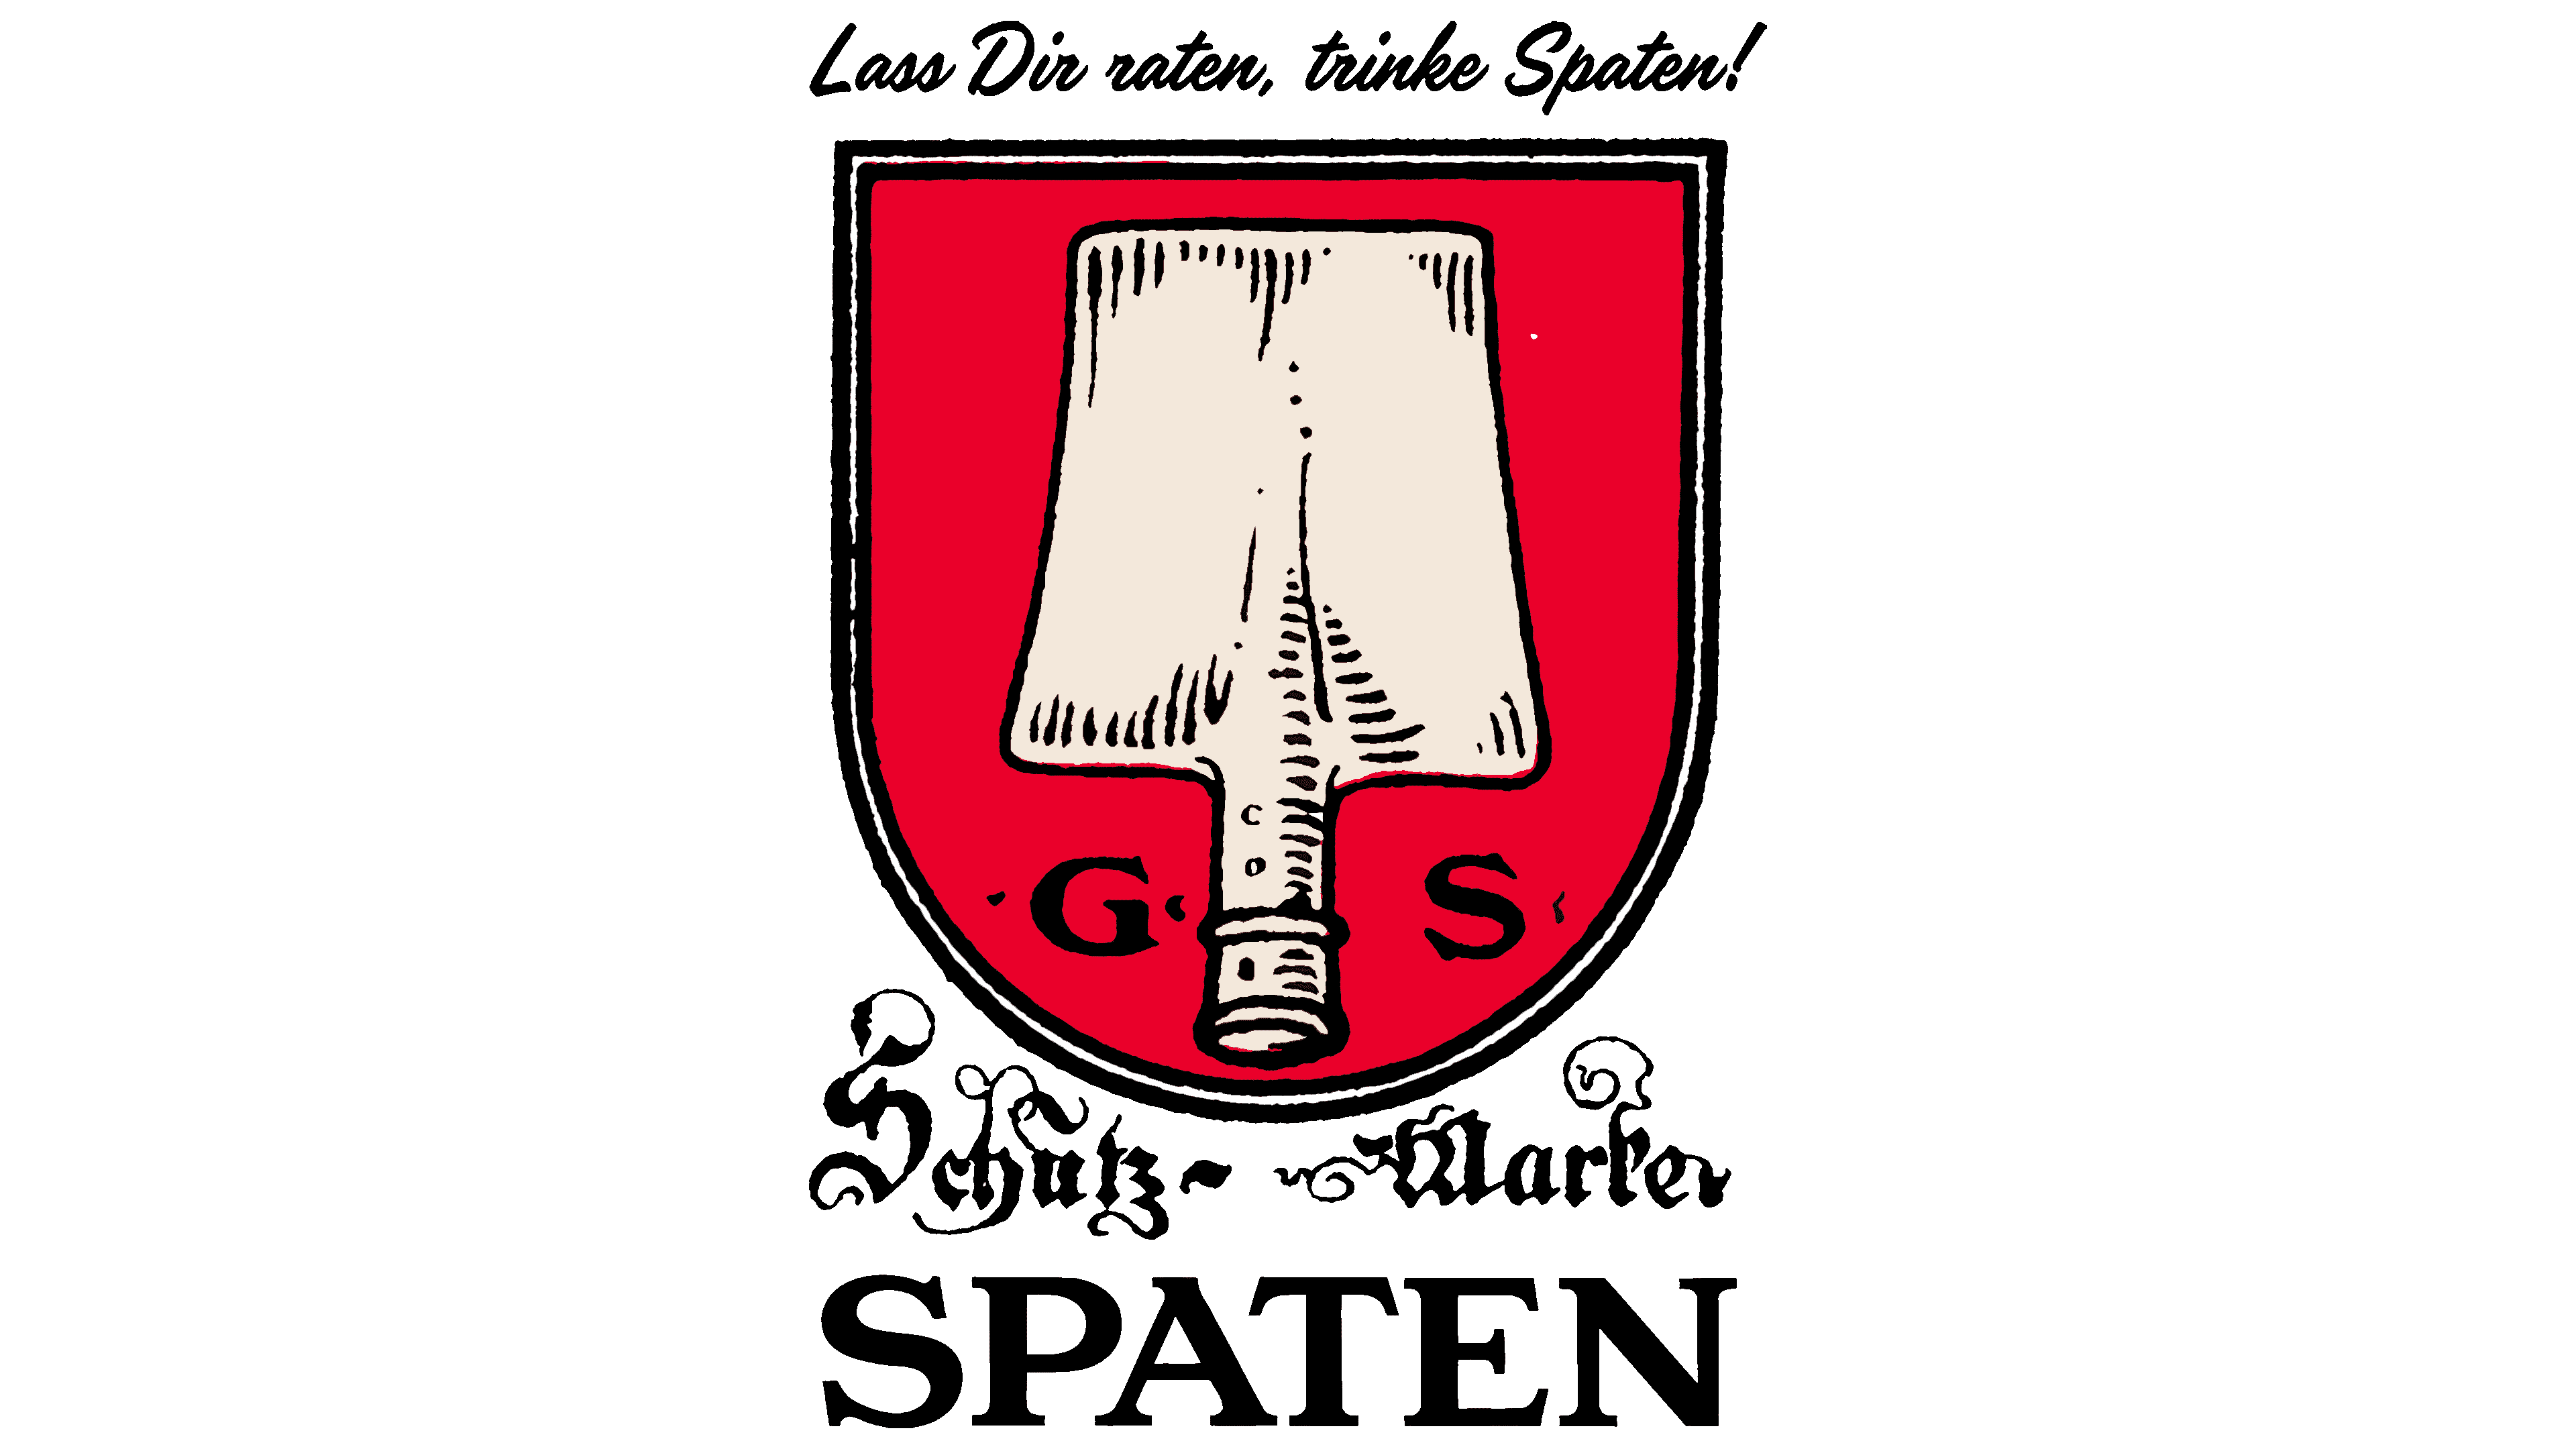  Devinette G/S GS de l'été.... Spaten-Logo